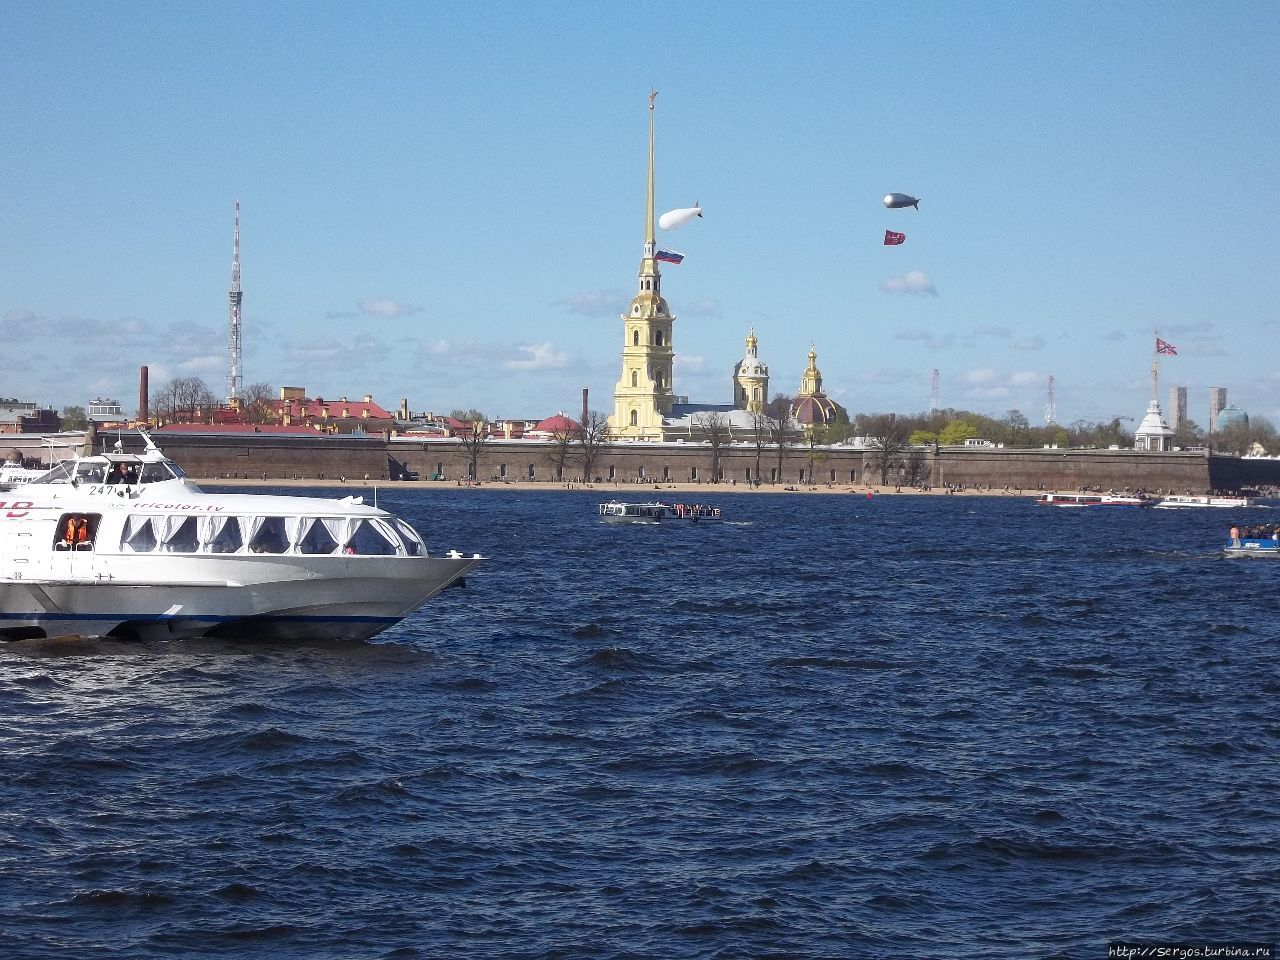 Занхт-Питер-Бурх заложена в 1703году, и официально зовётся Санкт-Петербургской крепостью (инородцам перевели, как Peter&Paul fortress) Выборг, Россия